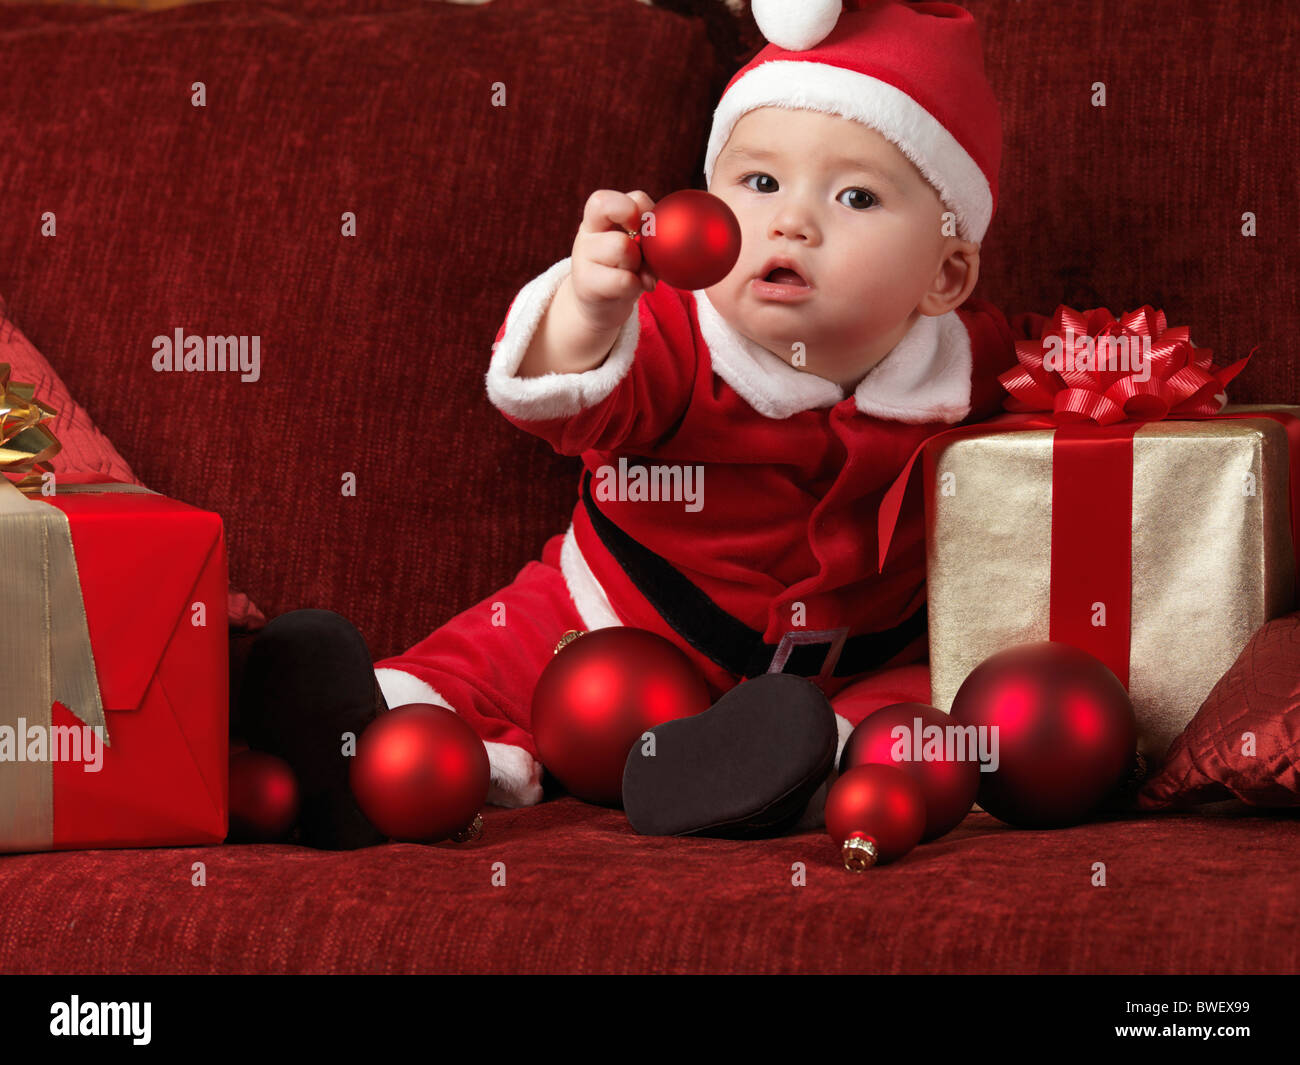 Lizenz erhältlich unter MaximImages.com - ein sechs Monate alter Junge trägt Weihnachtsmann-Kostüm und hält eine rote Kugel in der Hand Stockfoto